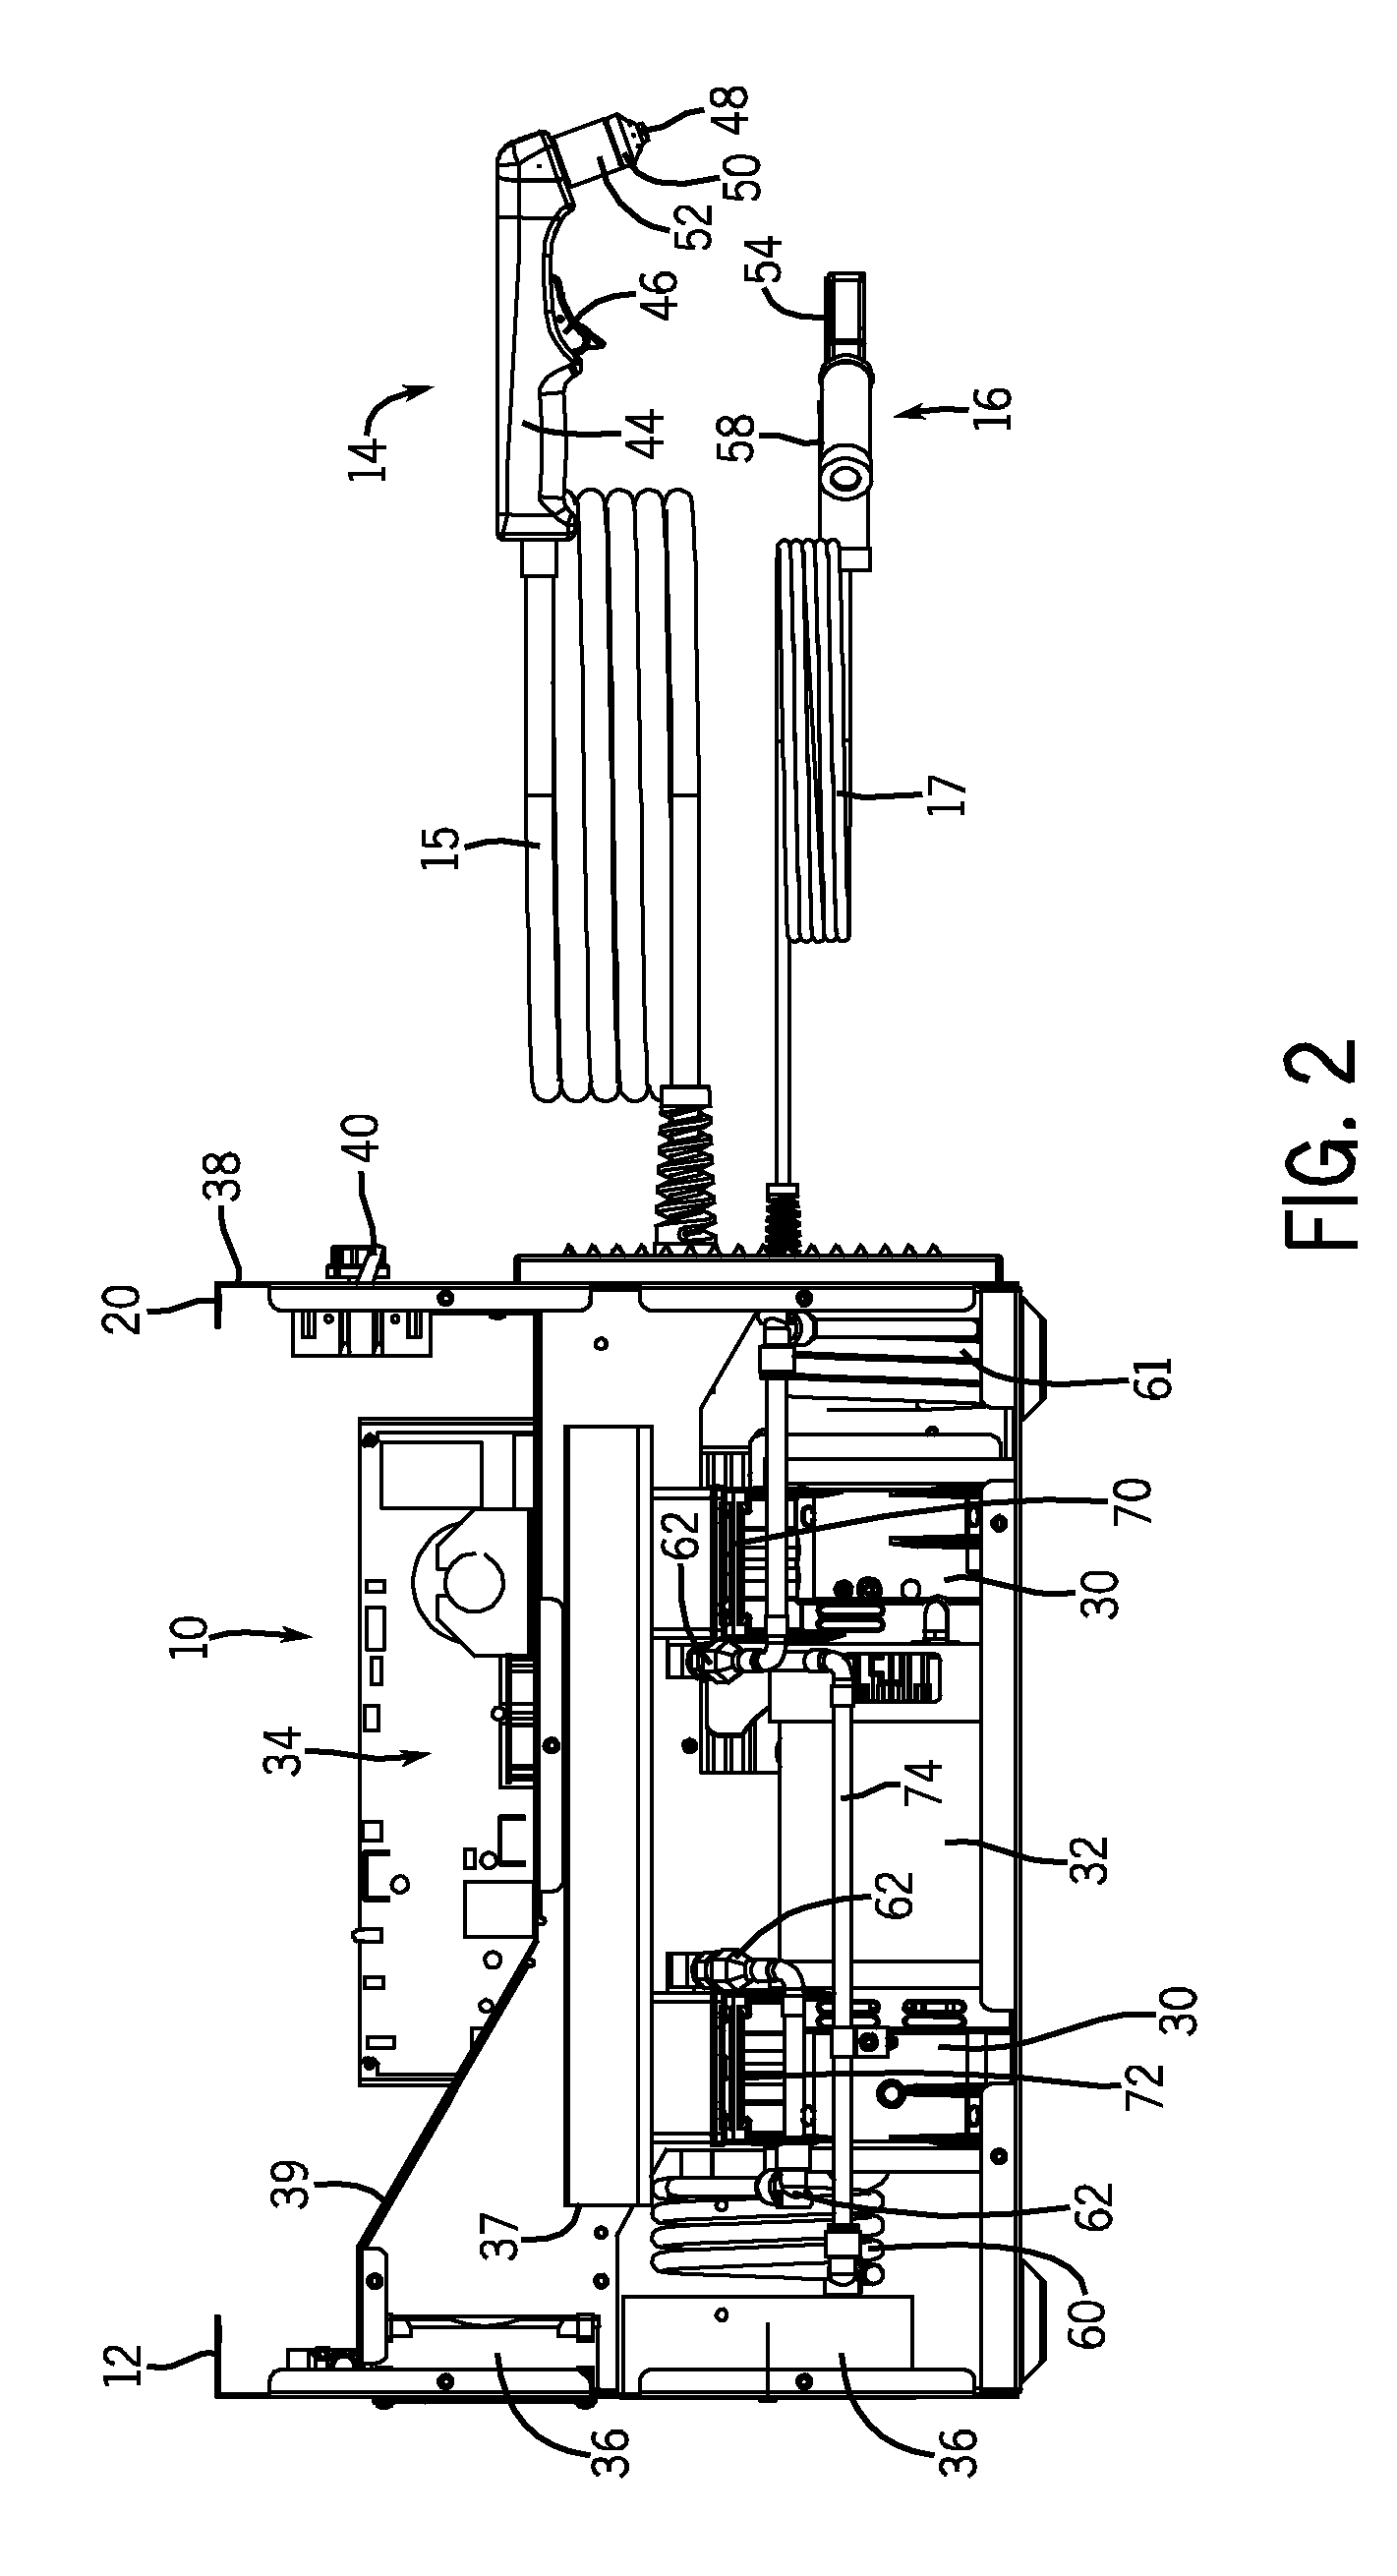 Multi-Stage Compressor in a Plasma Cutter